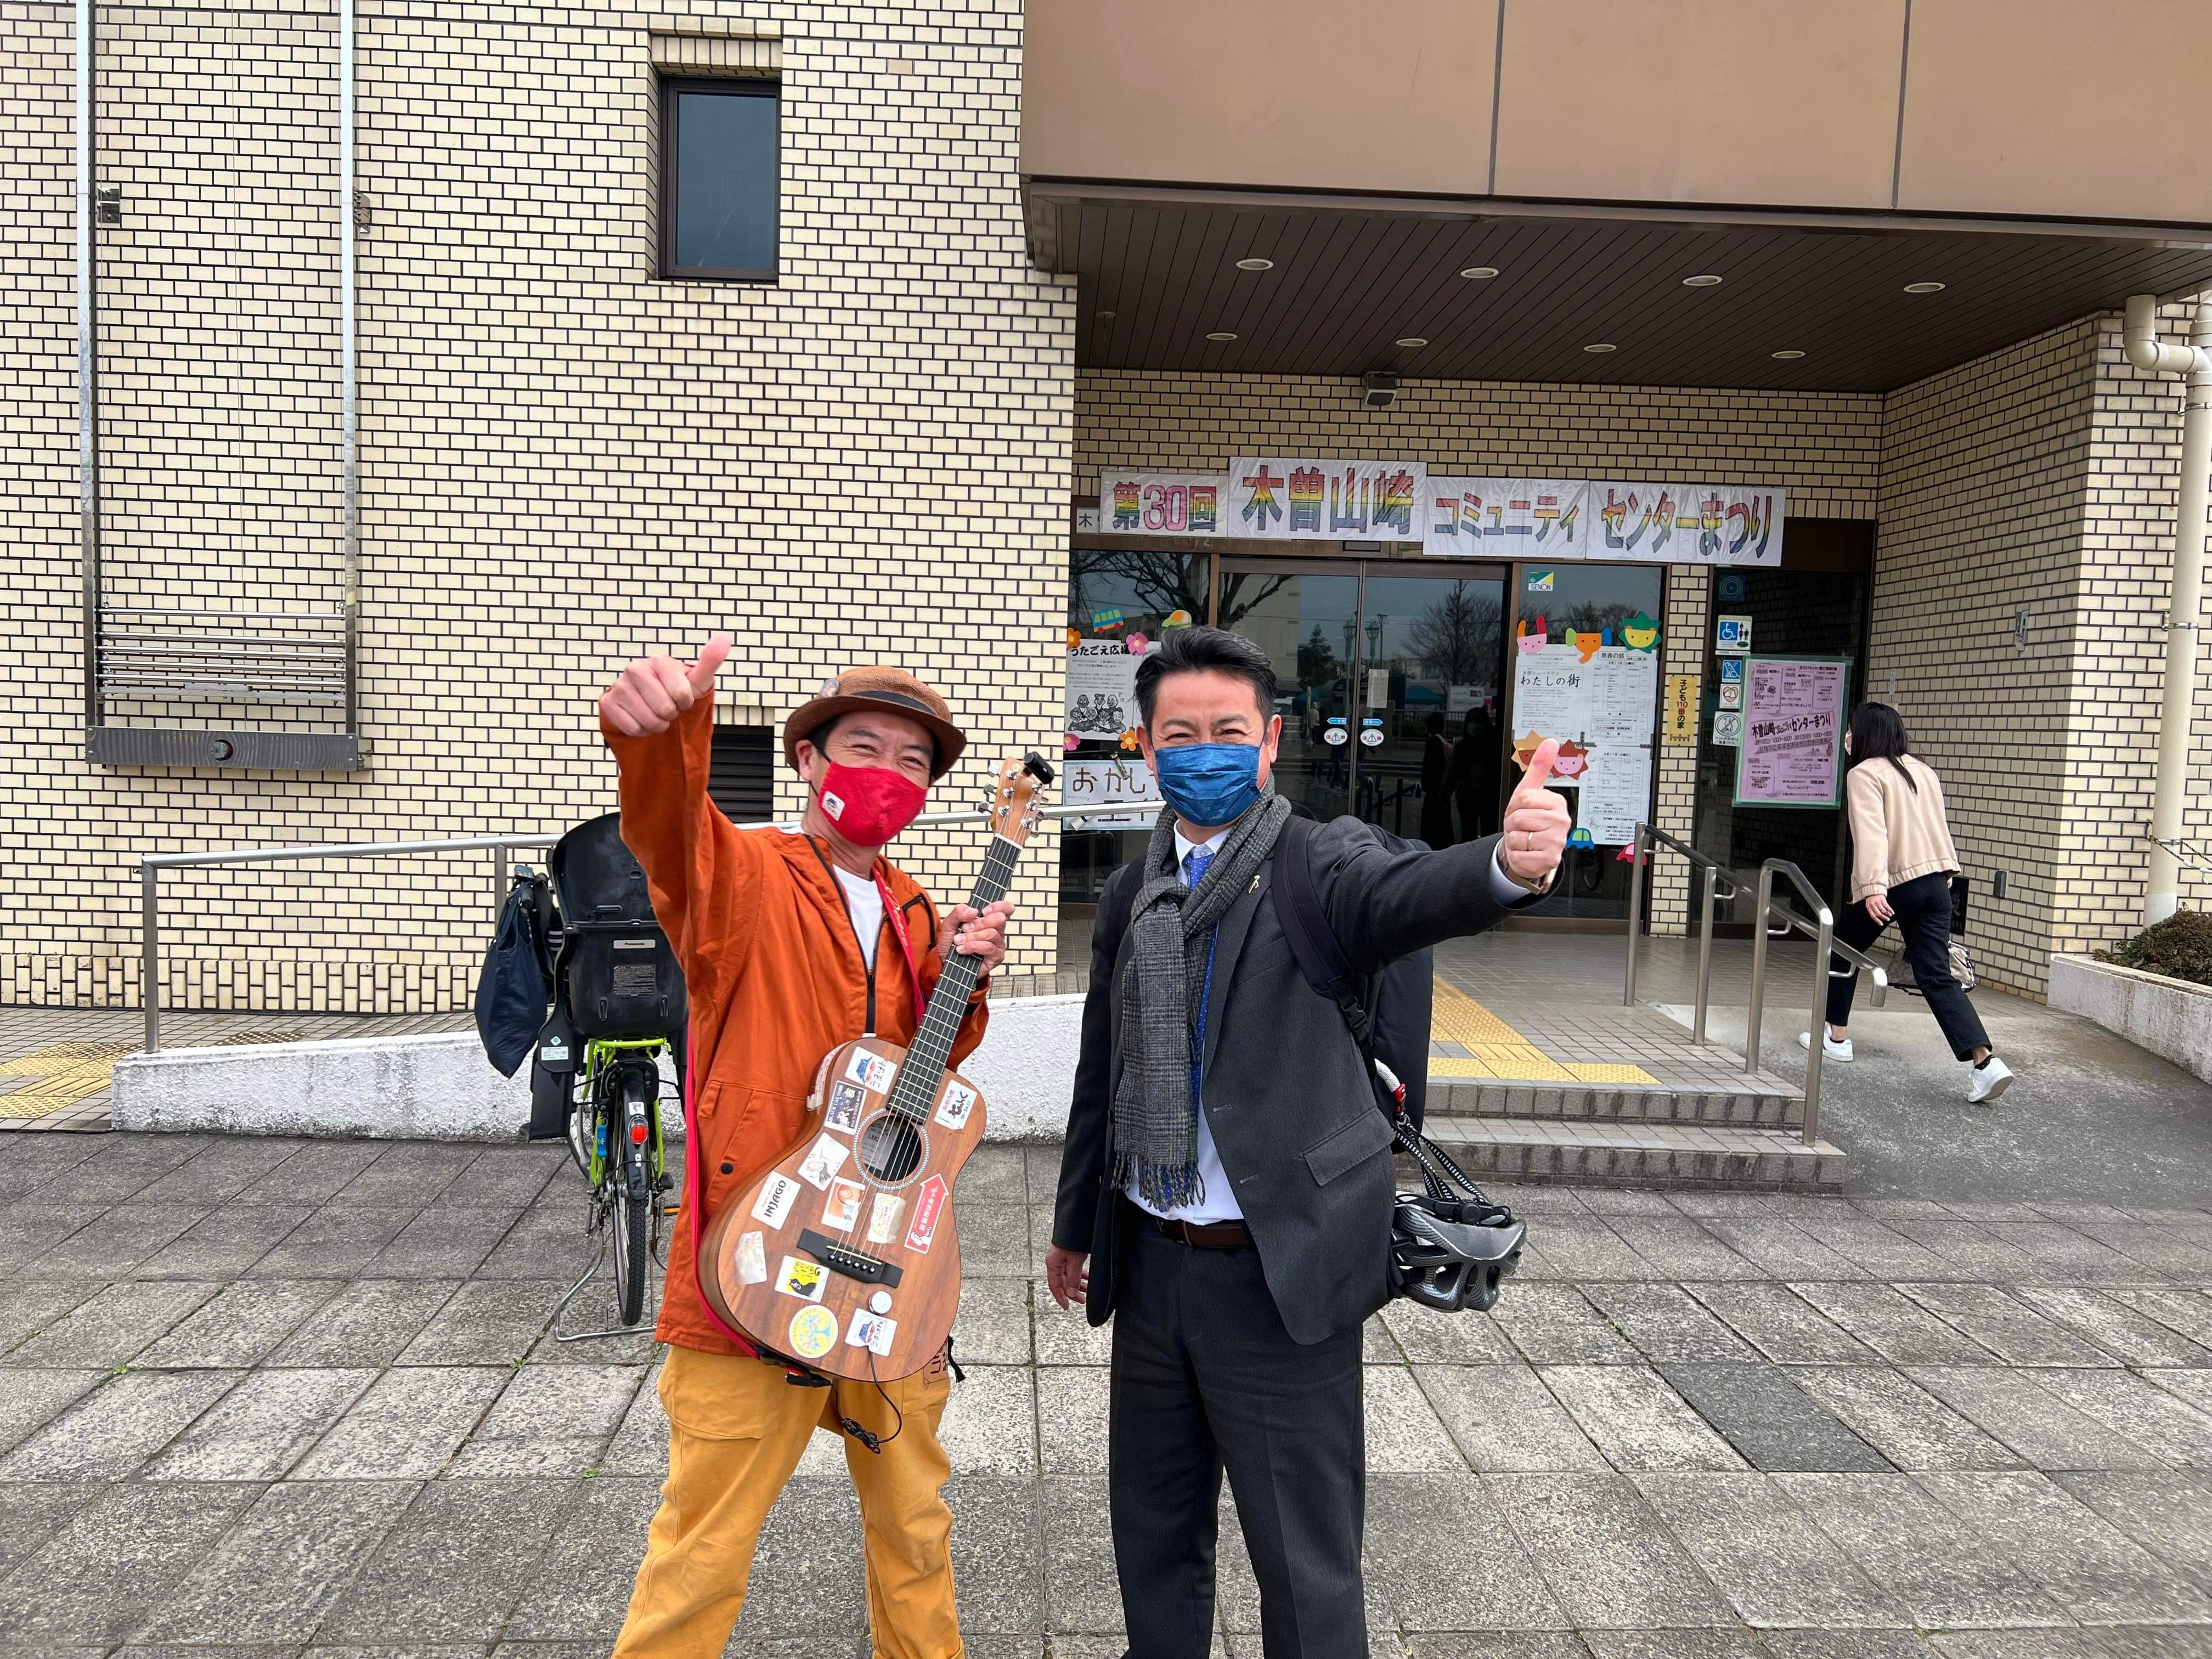 #町田市議会議員 の #ふじた学 です。  4年ぶりに開催された、木曽山崎コミュニティセンターまつり に行ってきました。みなさんと笑顔で、「お久しぶり〜、やっぱりいいですね〜」と挨拶を交わすことができ